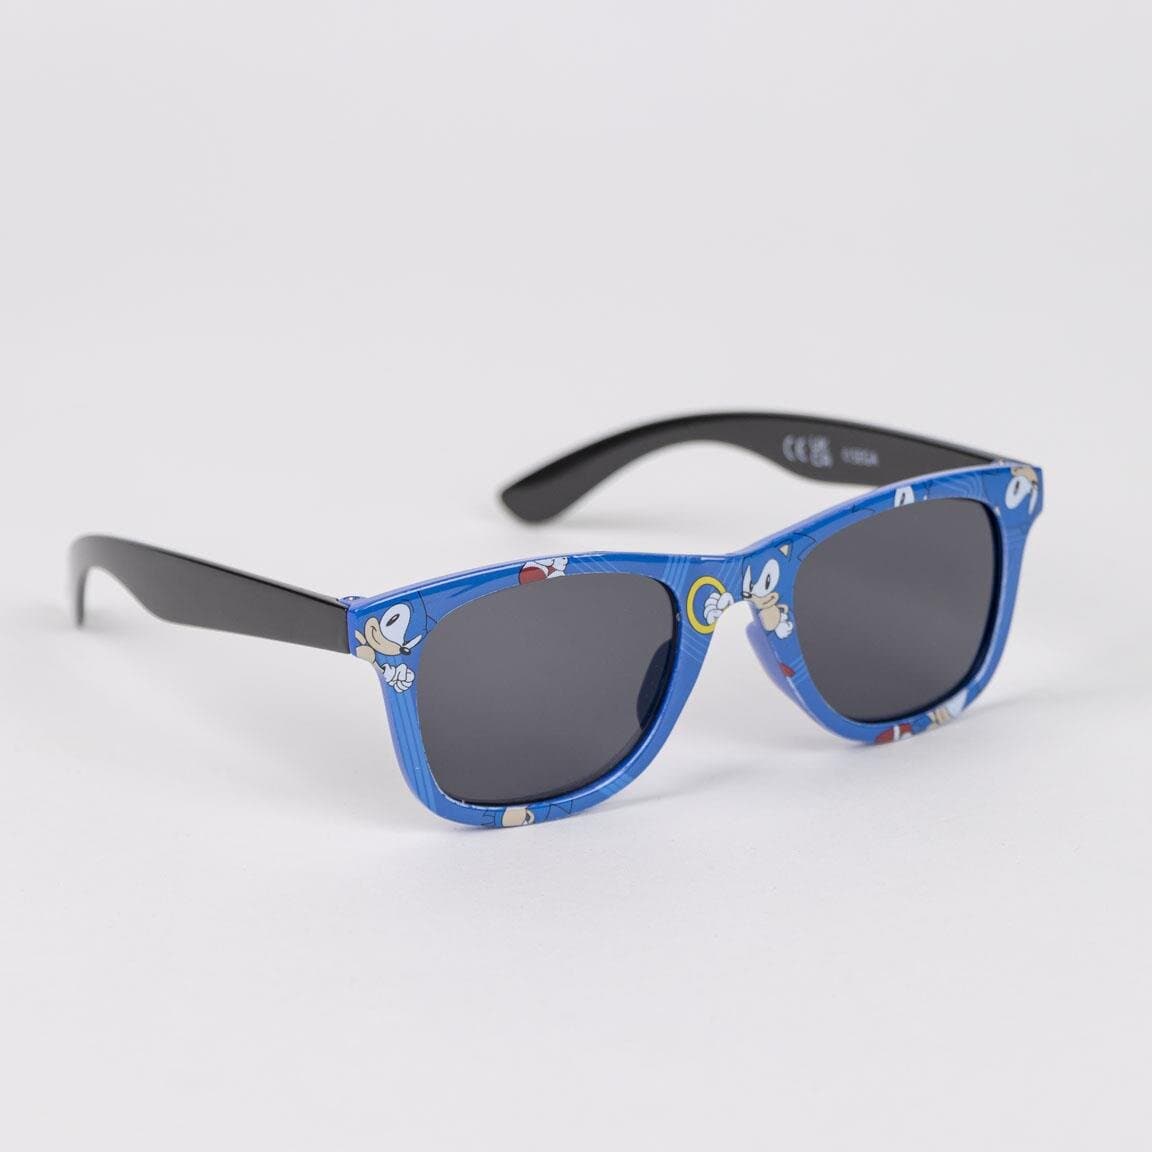 Sonic the Hedgehog - Caps og solbriller til barn